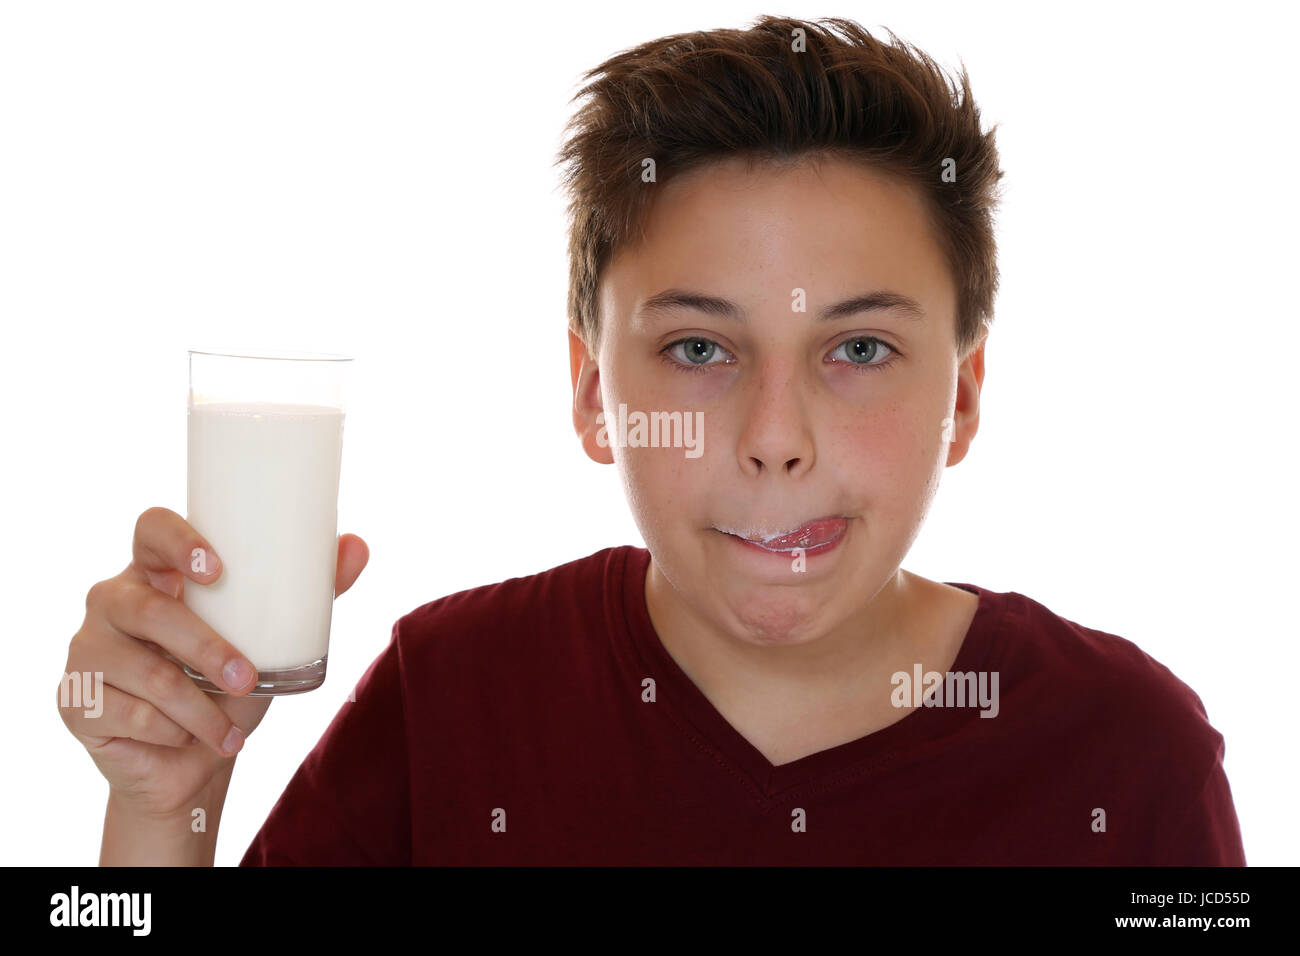 Gesunde Ernährung Junge trinkt Milch und leckt den Mund ab, isoliert vor einem weissen Hintergrund Foto Stock